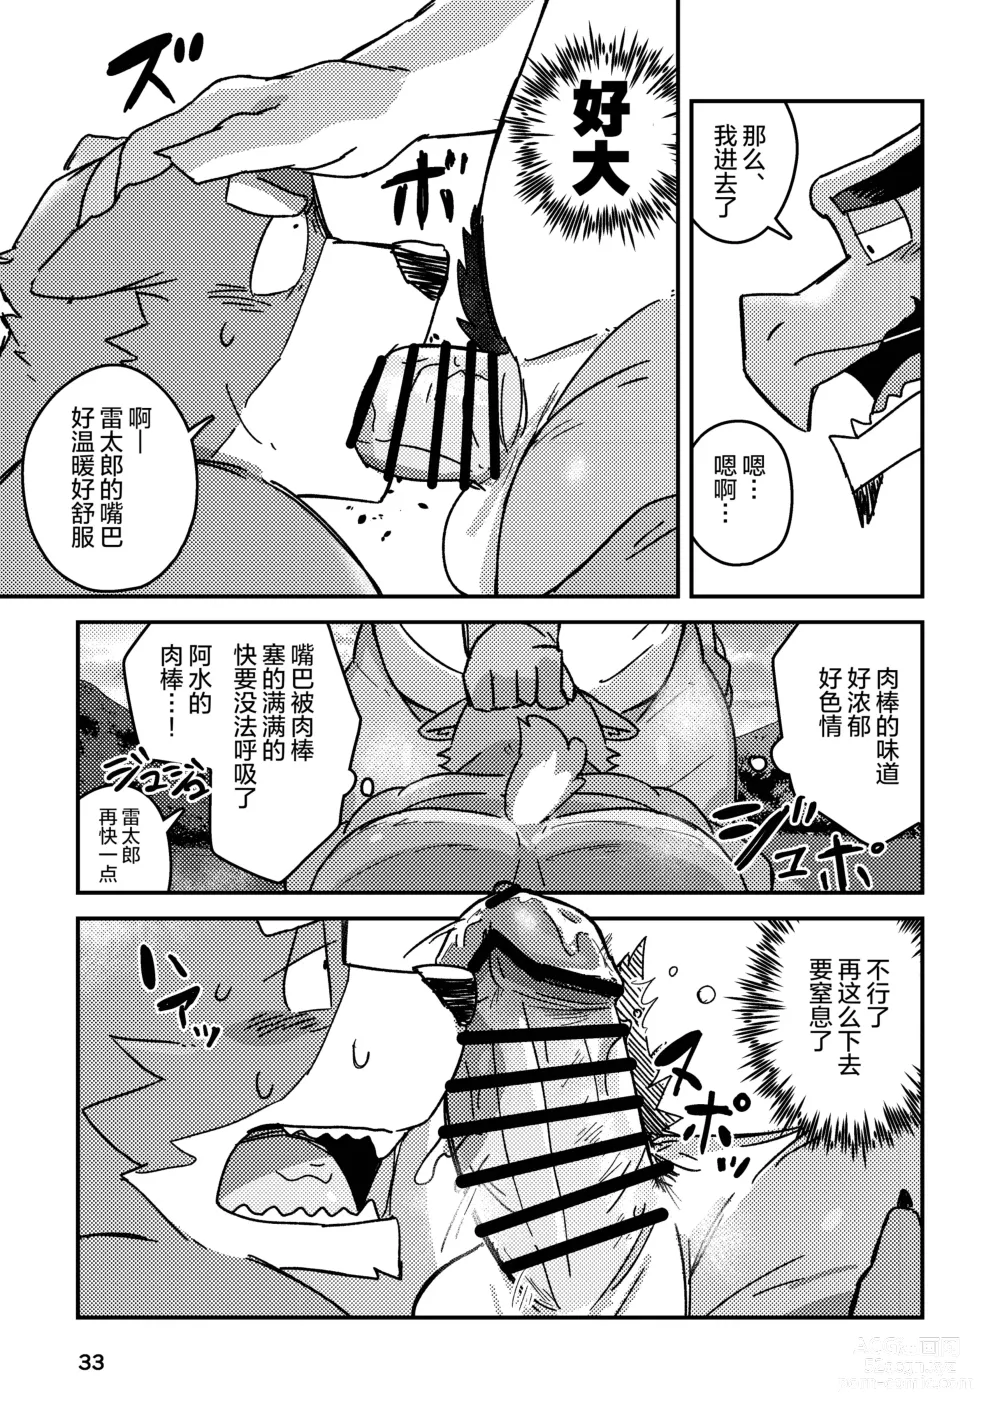 Page 33 of doujinshi 约定的龙穴